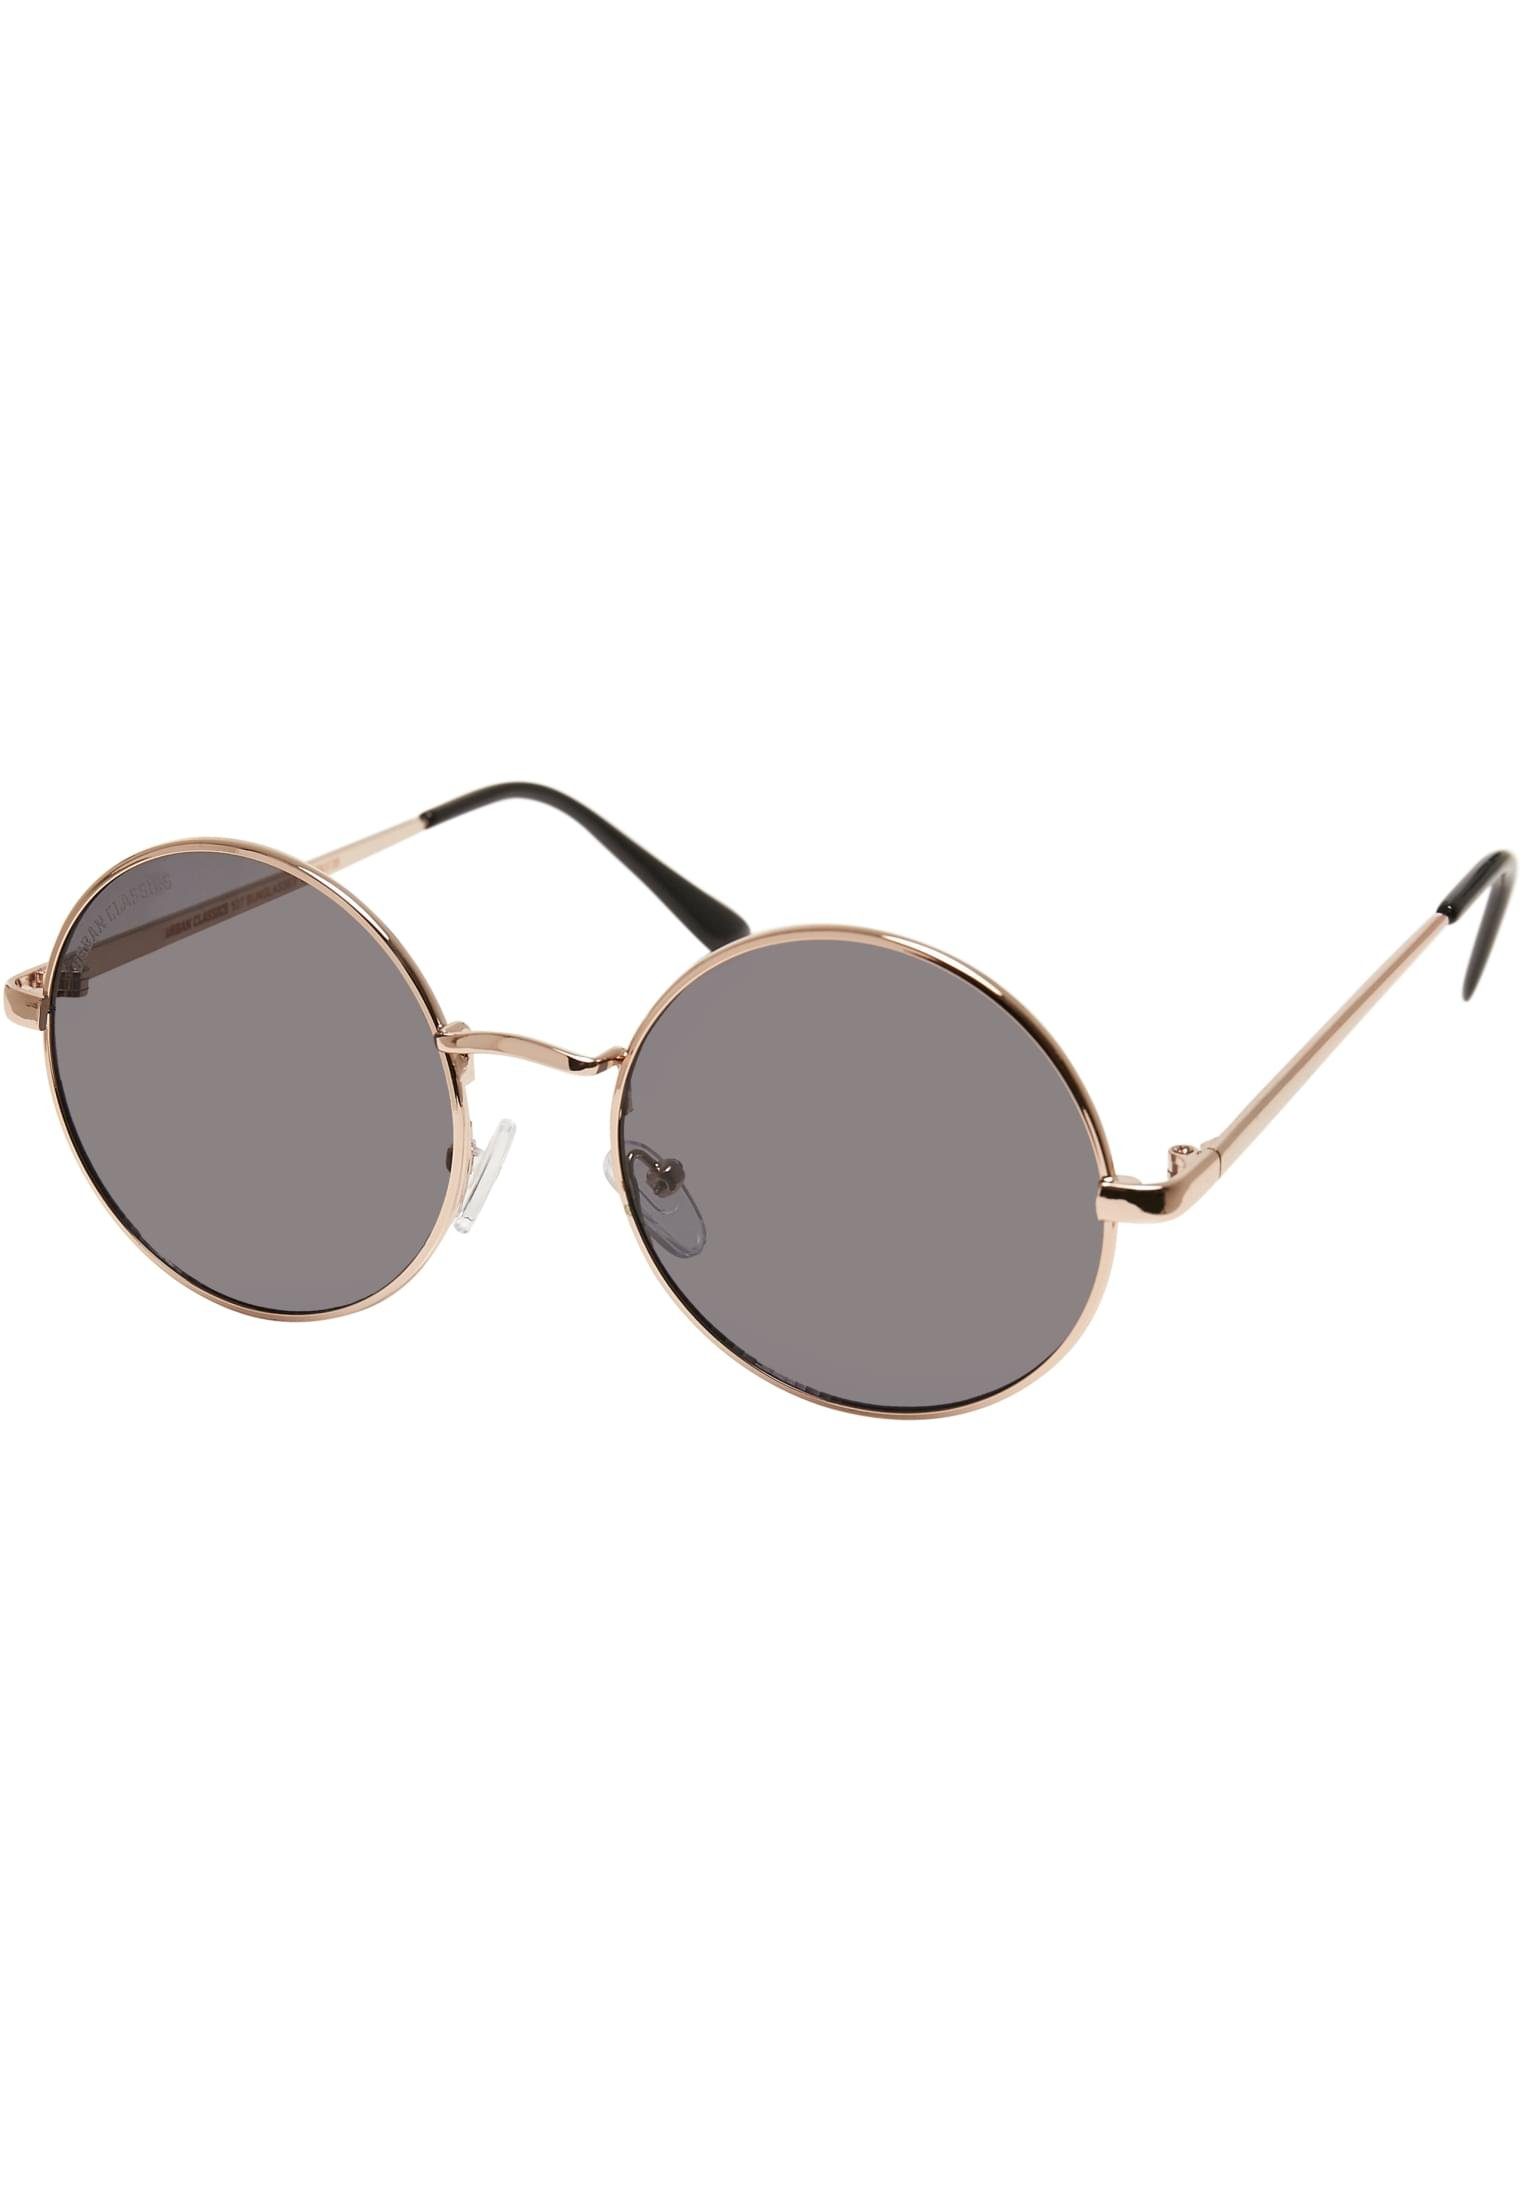 URBAN CLASSICS Sunglasses Sonnenbrille gold/blk Accessoires 107 UC